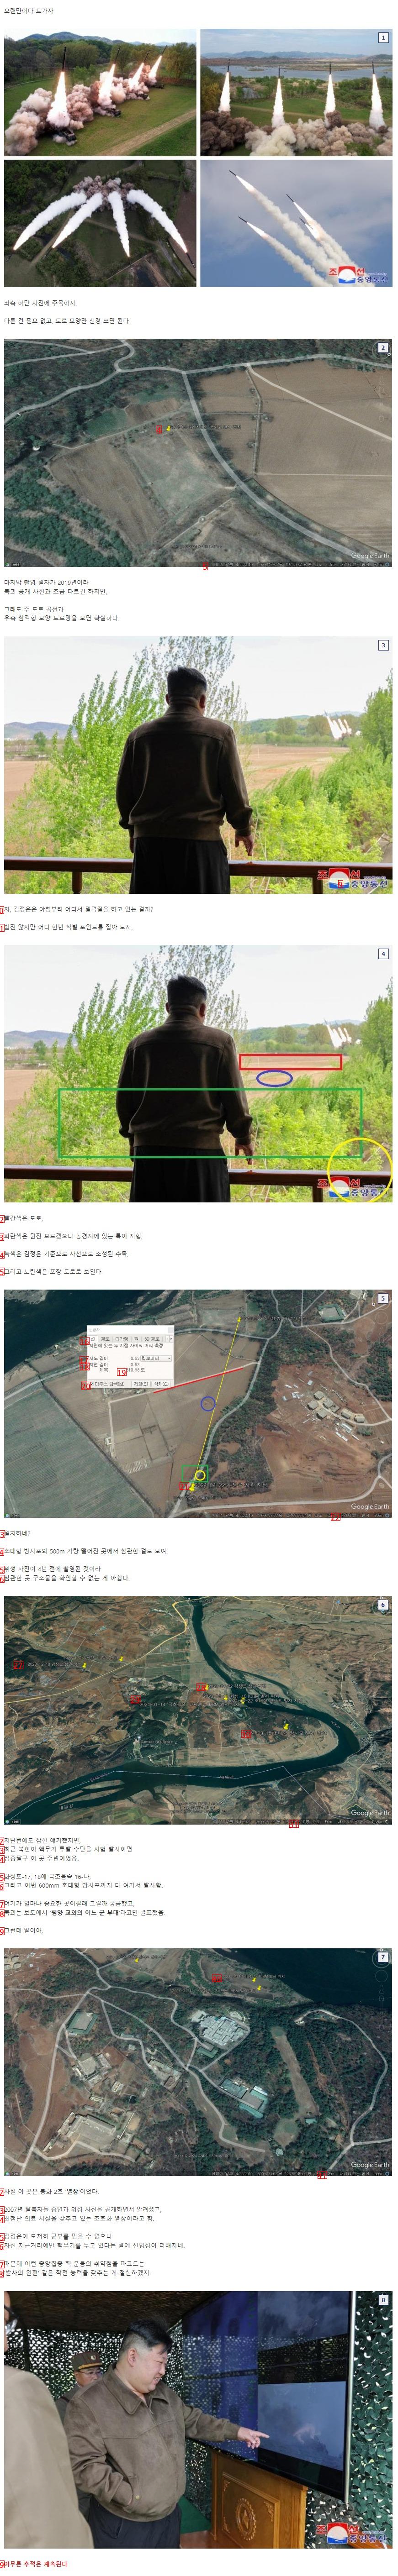 사진 2장으로 북한 초대형 방사포 위치를 알아낸 밀덕